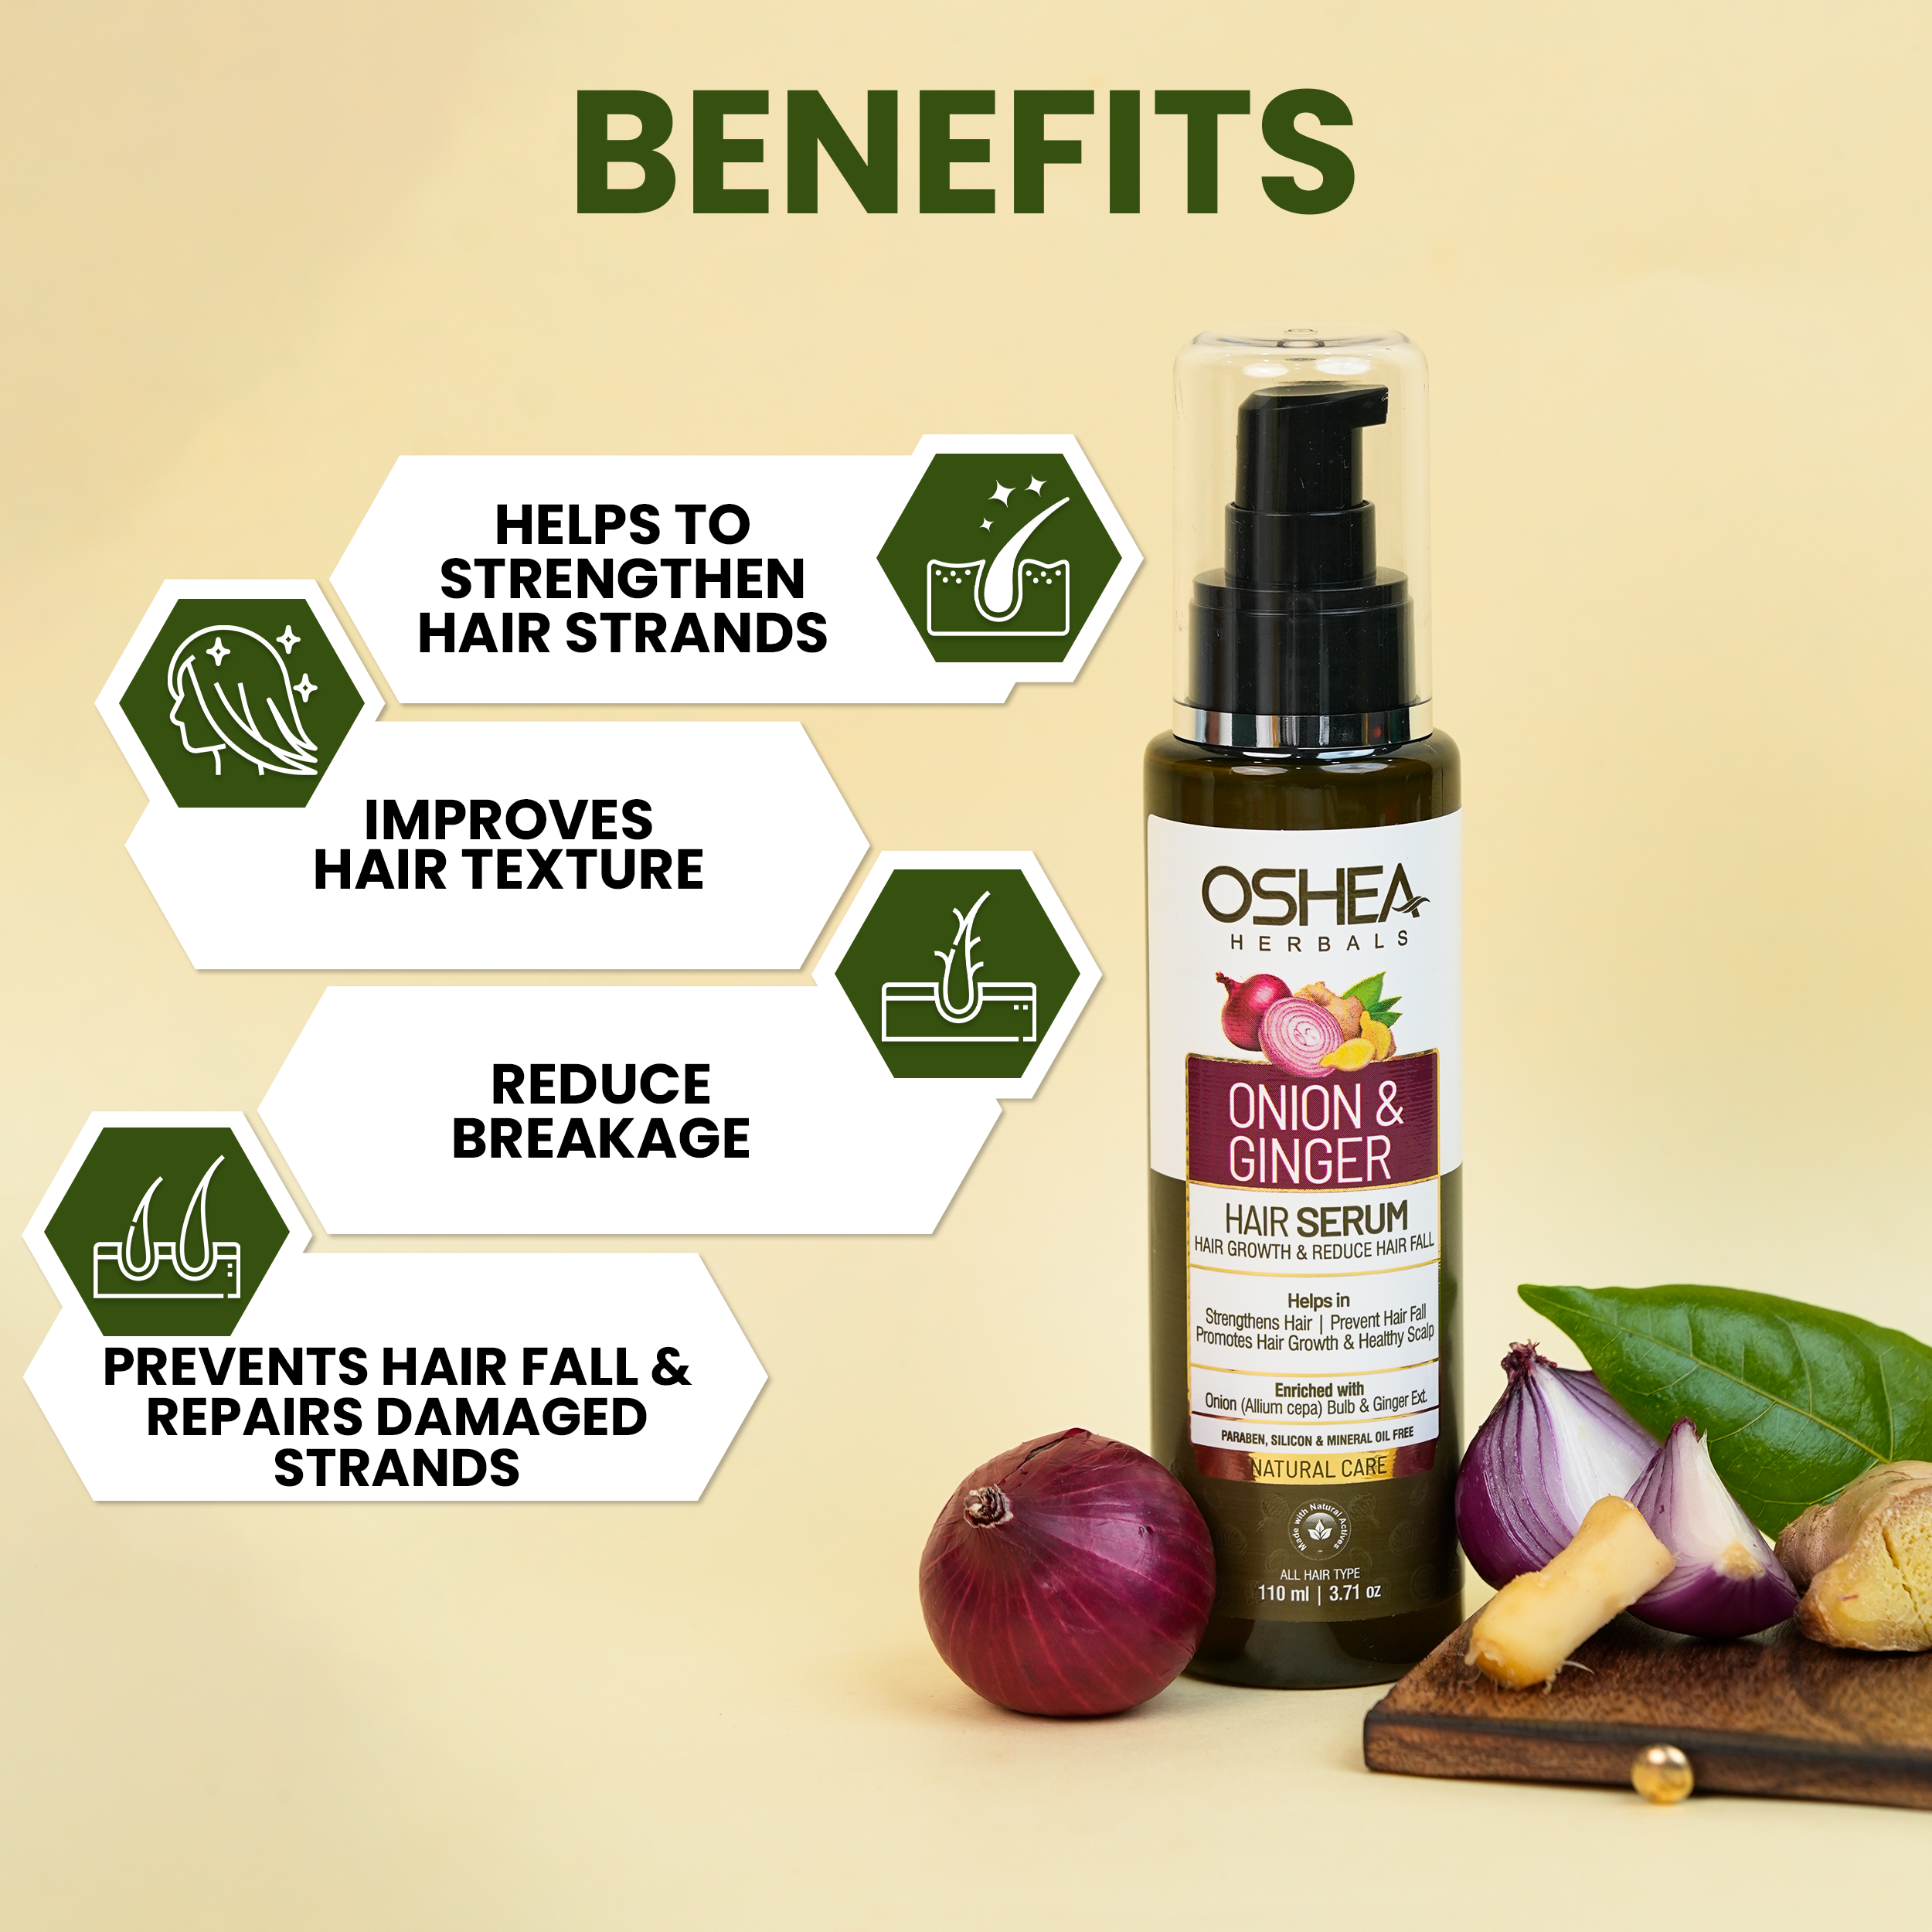 Benefits Onion And Ginger Hair Serum Oshea Herbals